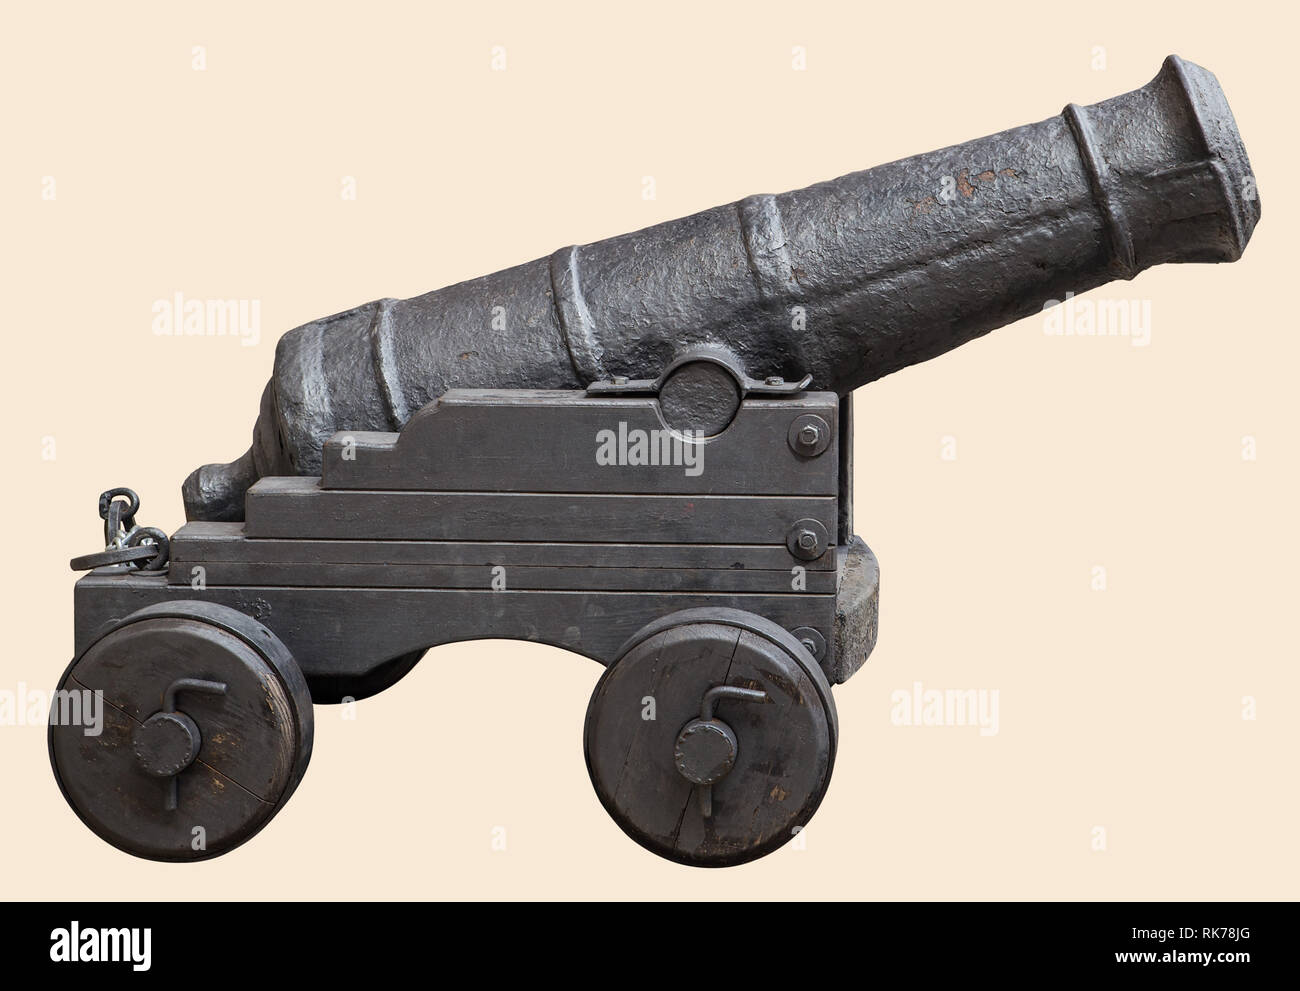 Mittelalterliche Kanone Schwarzpulver Artillerie im Mittelalter,  Reenactment, auf weißem Hintergrund Stockfotografie - Alamy